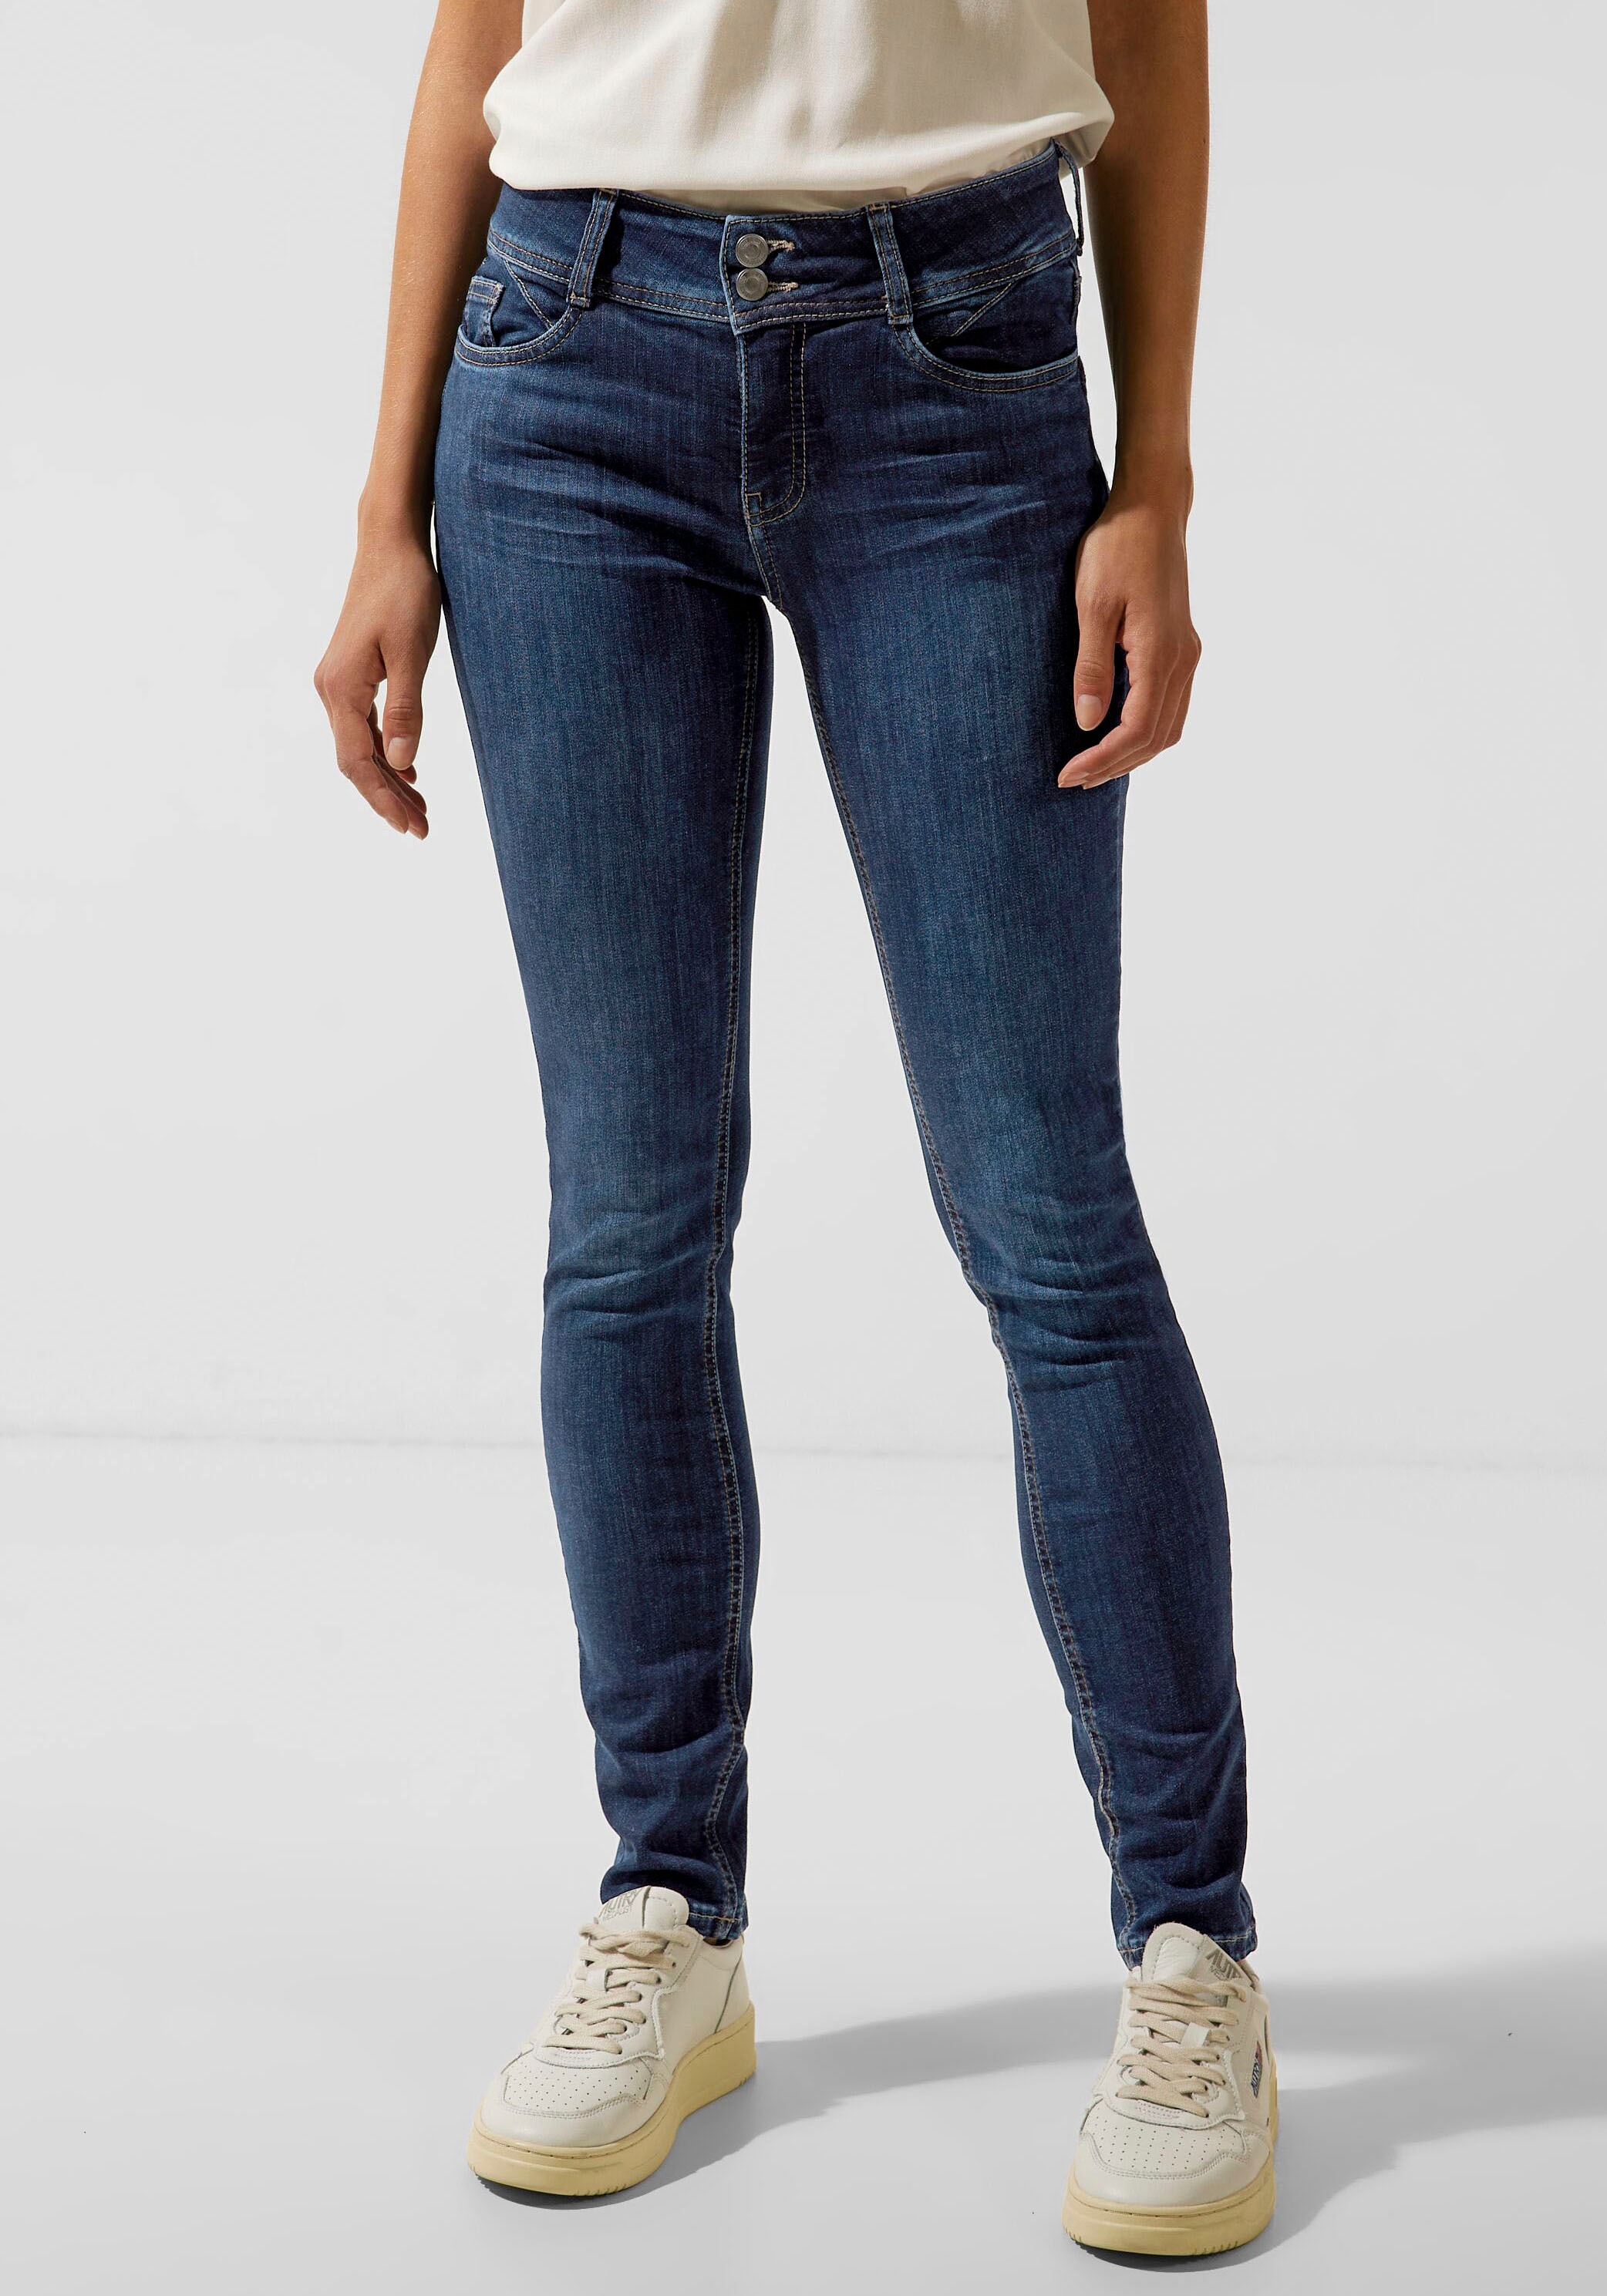 STREET Markenlabel ONE OTTO mit hinten Slim-fit-Jeans, online bei